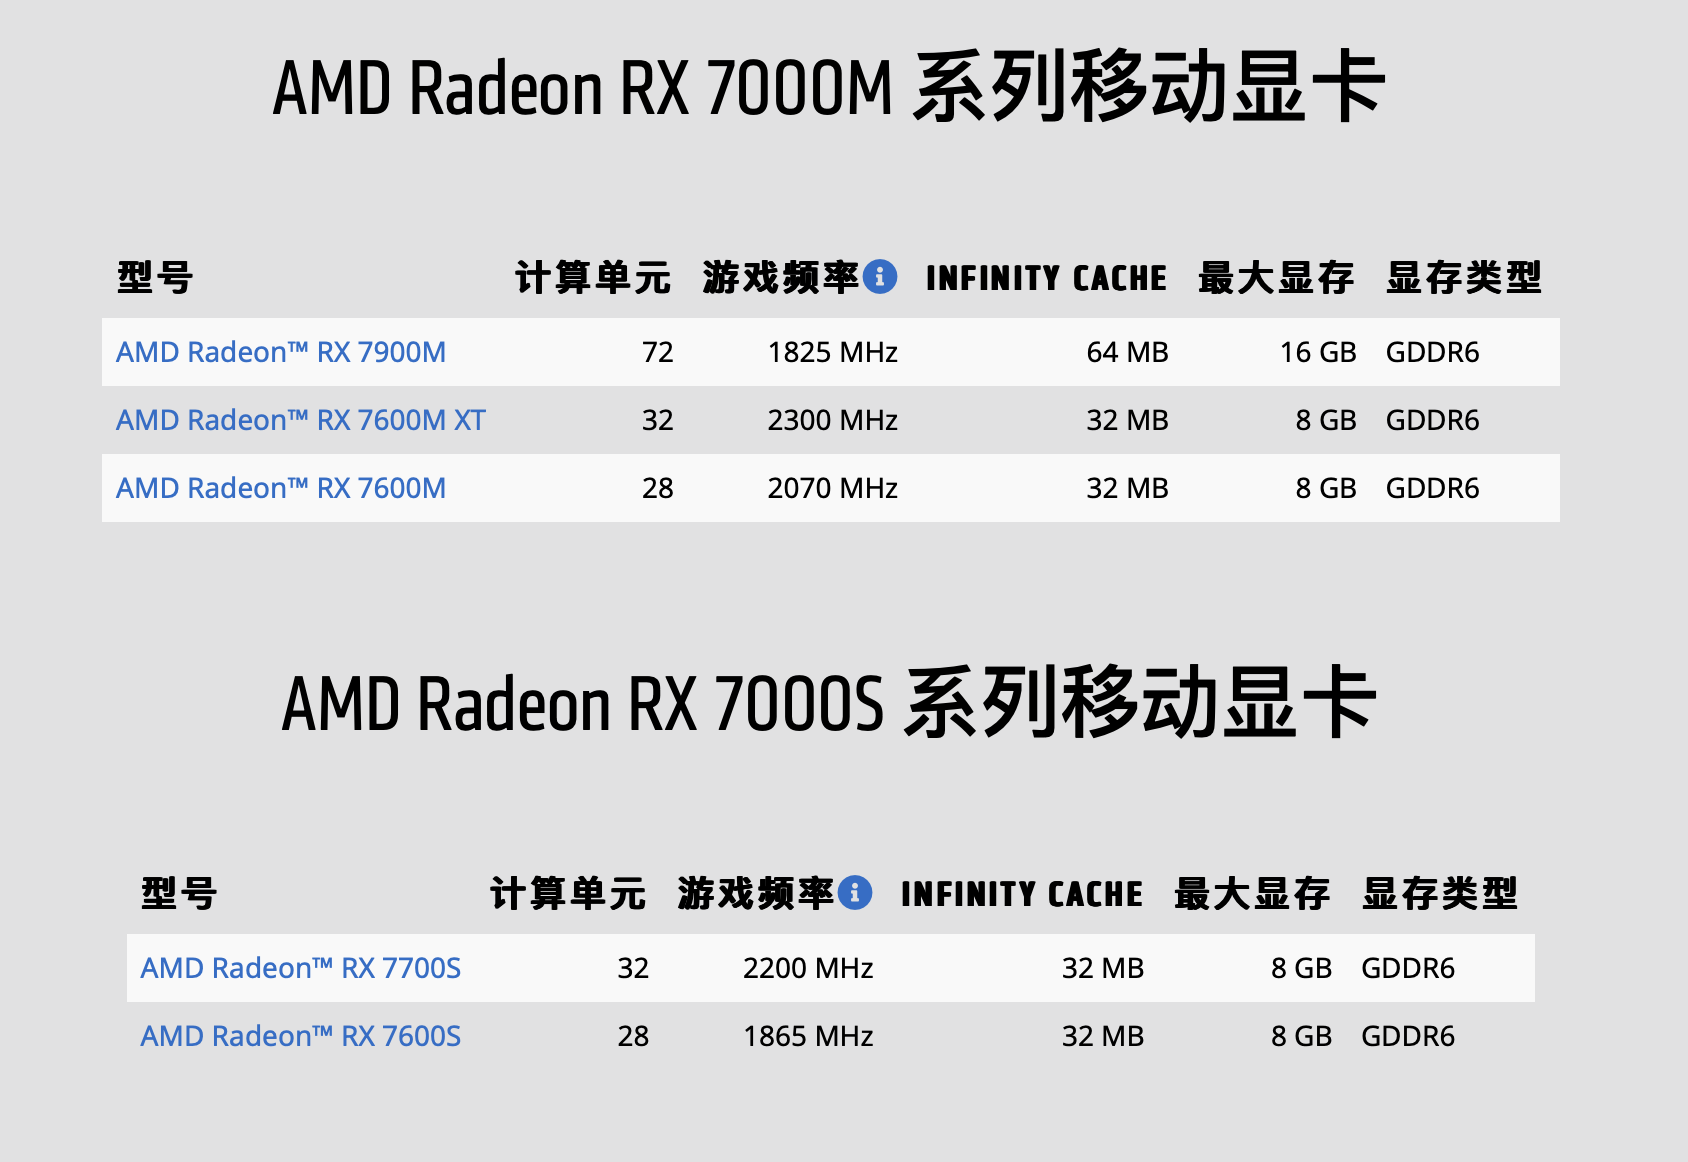 消息称 AMD 将推新款 RX 7700M / 7800M 笔记本 GPU